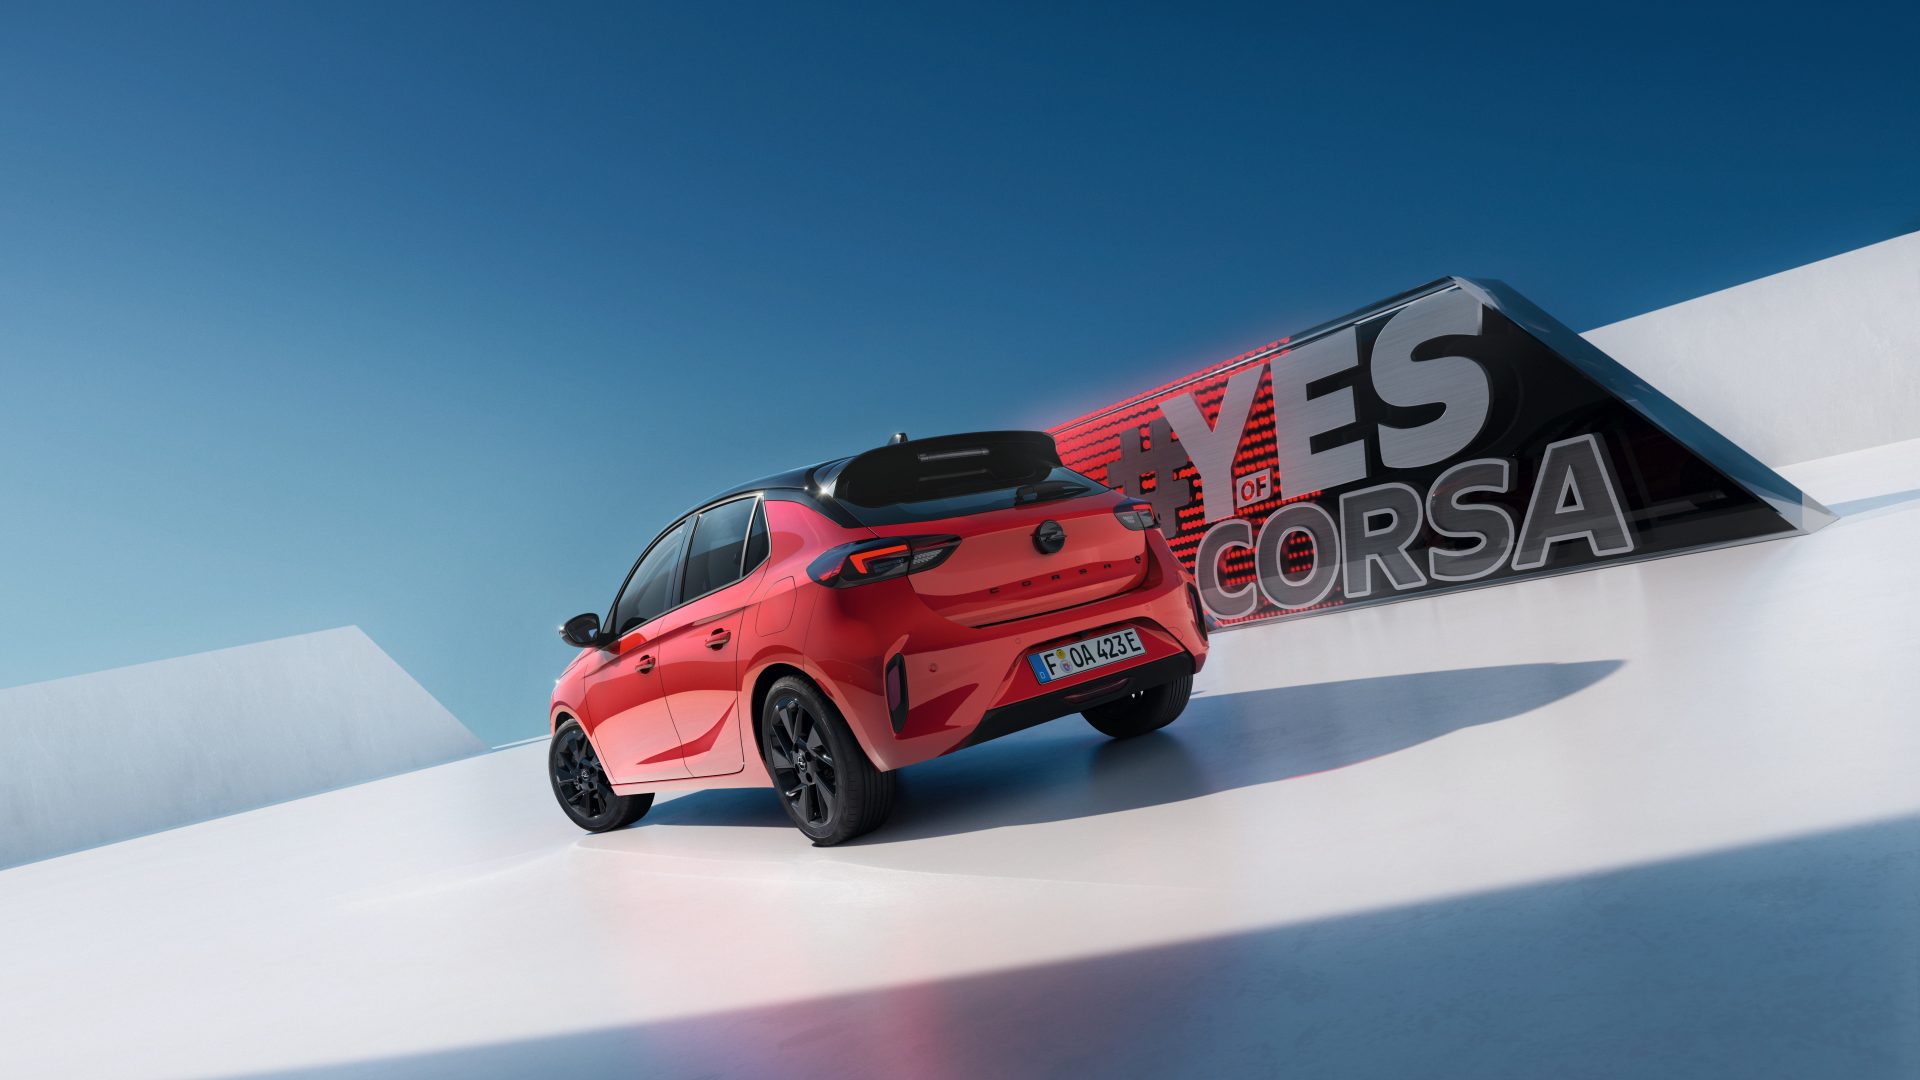 Opel Corsa Electric Edición Limitada Yes (5)